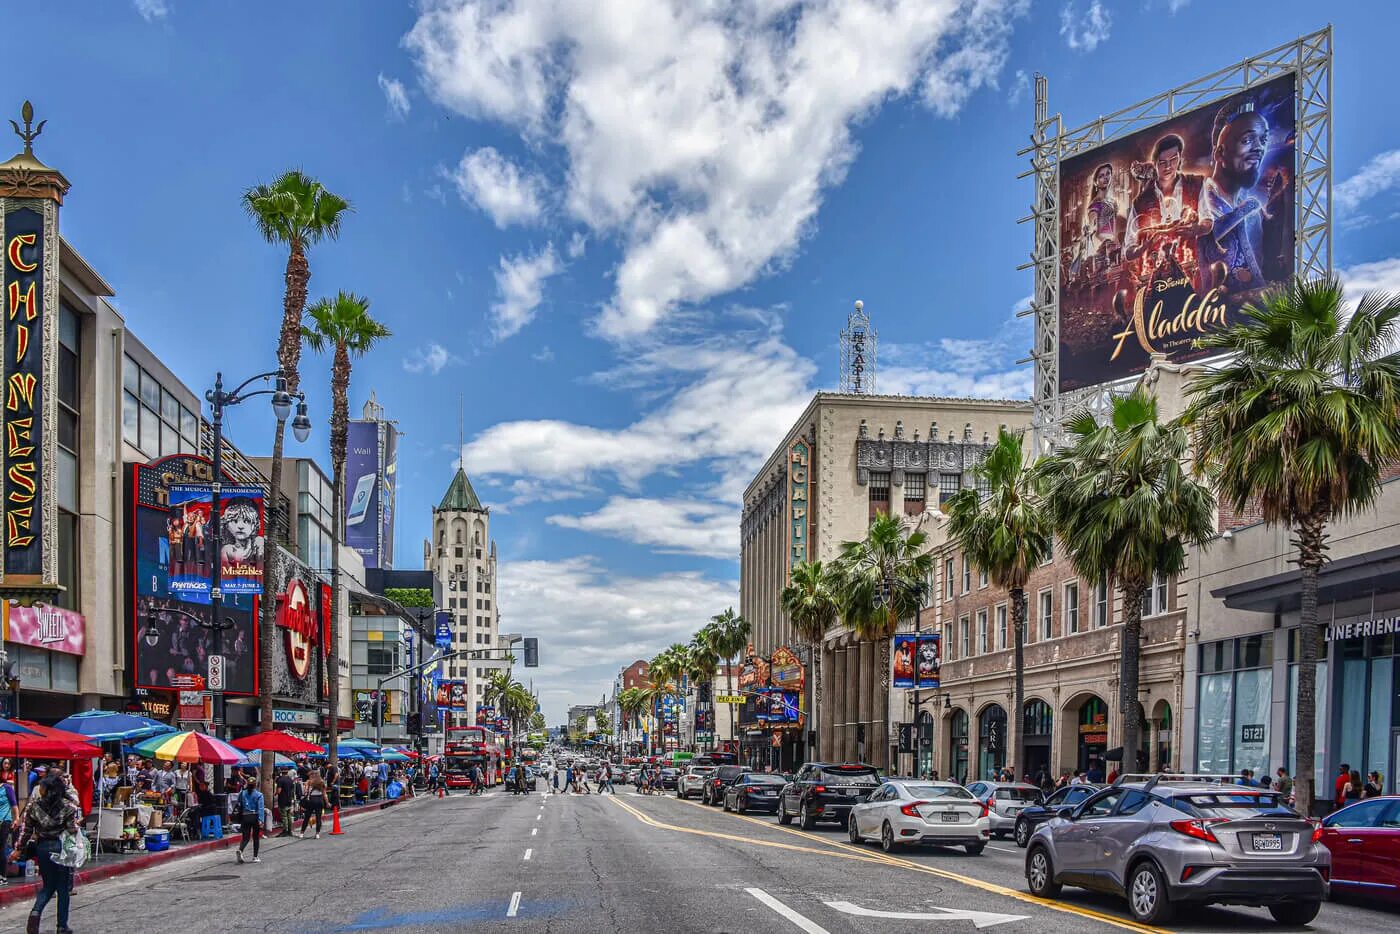 Бульвар Голливуд в Лос-Анджелесе. Лос Анджелес бульвар Голливуд. Лос Анджелес улицы Голливуда. Улицы Лос Анджелеса Голливуд.